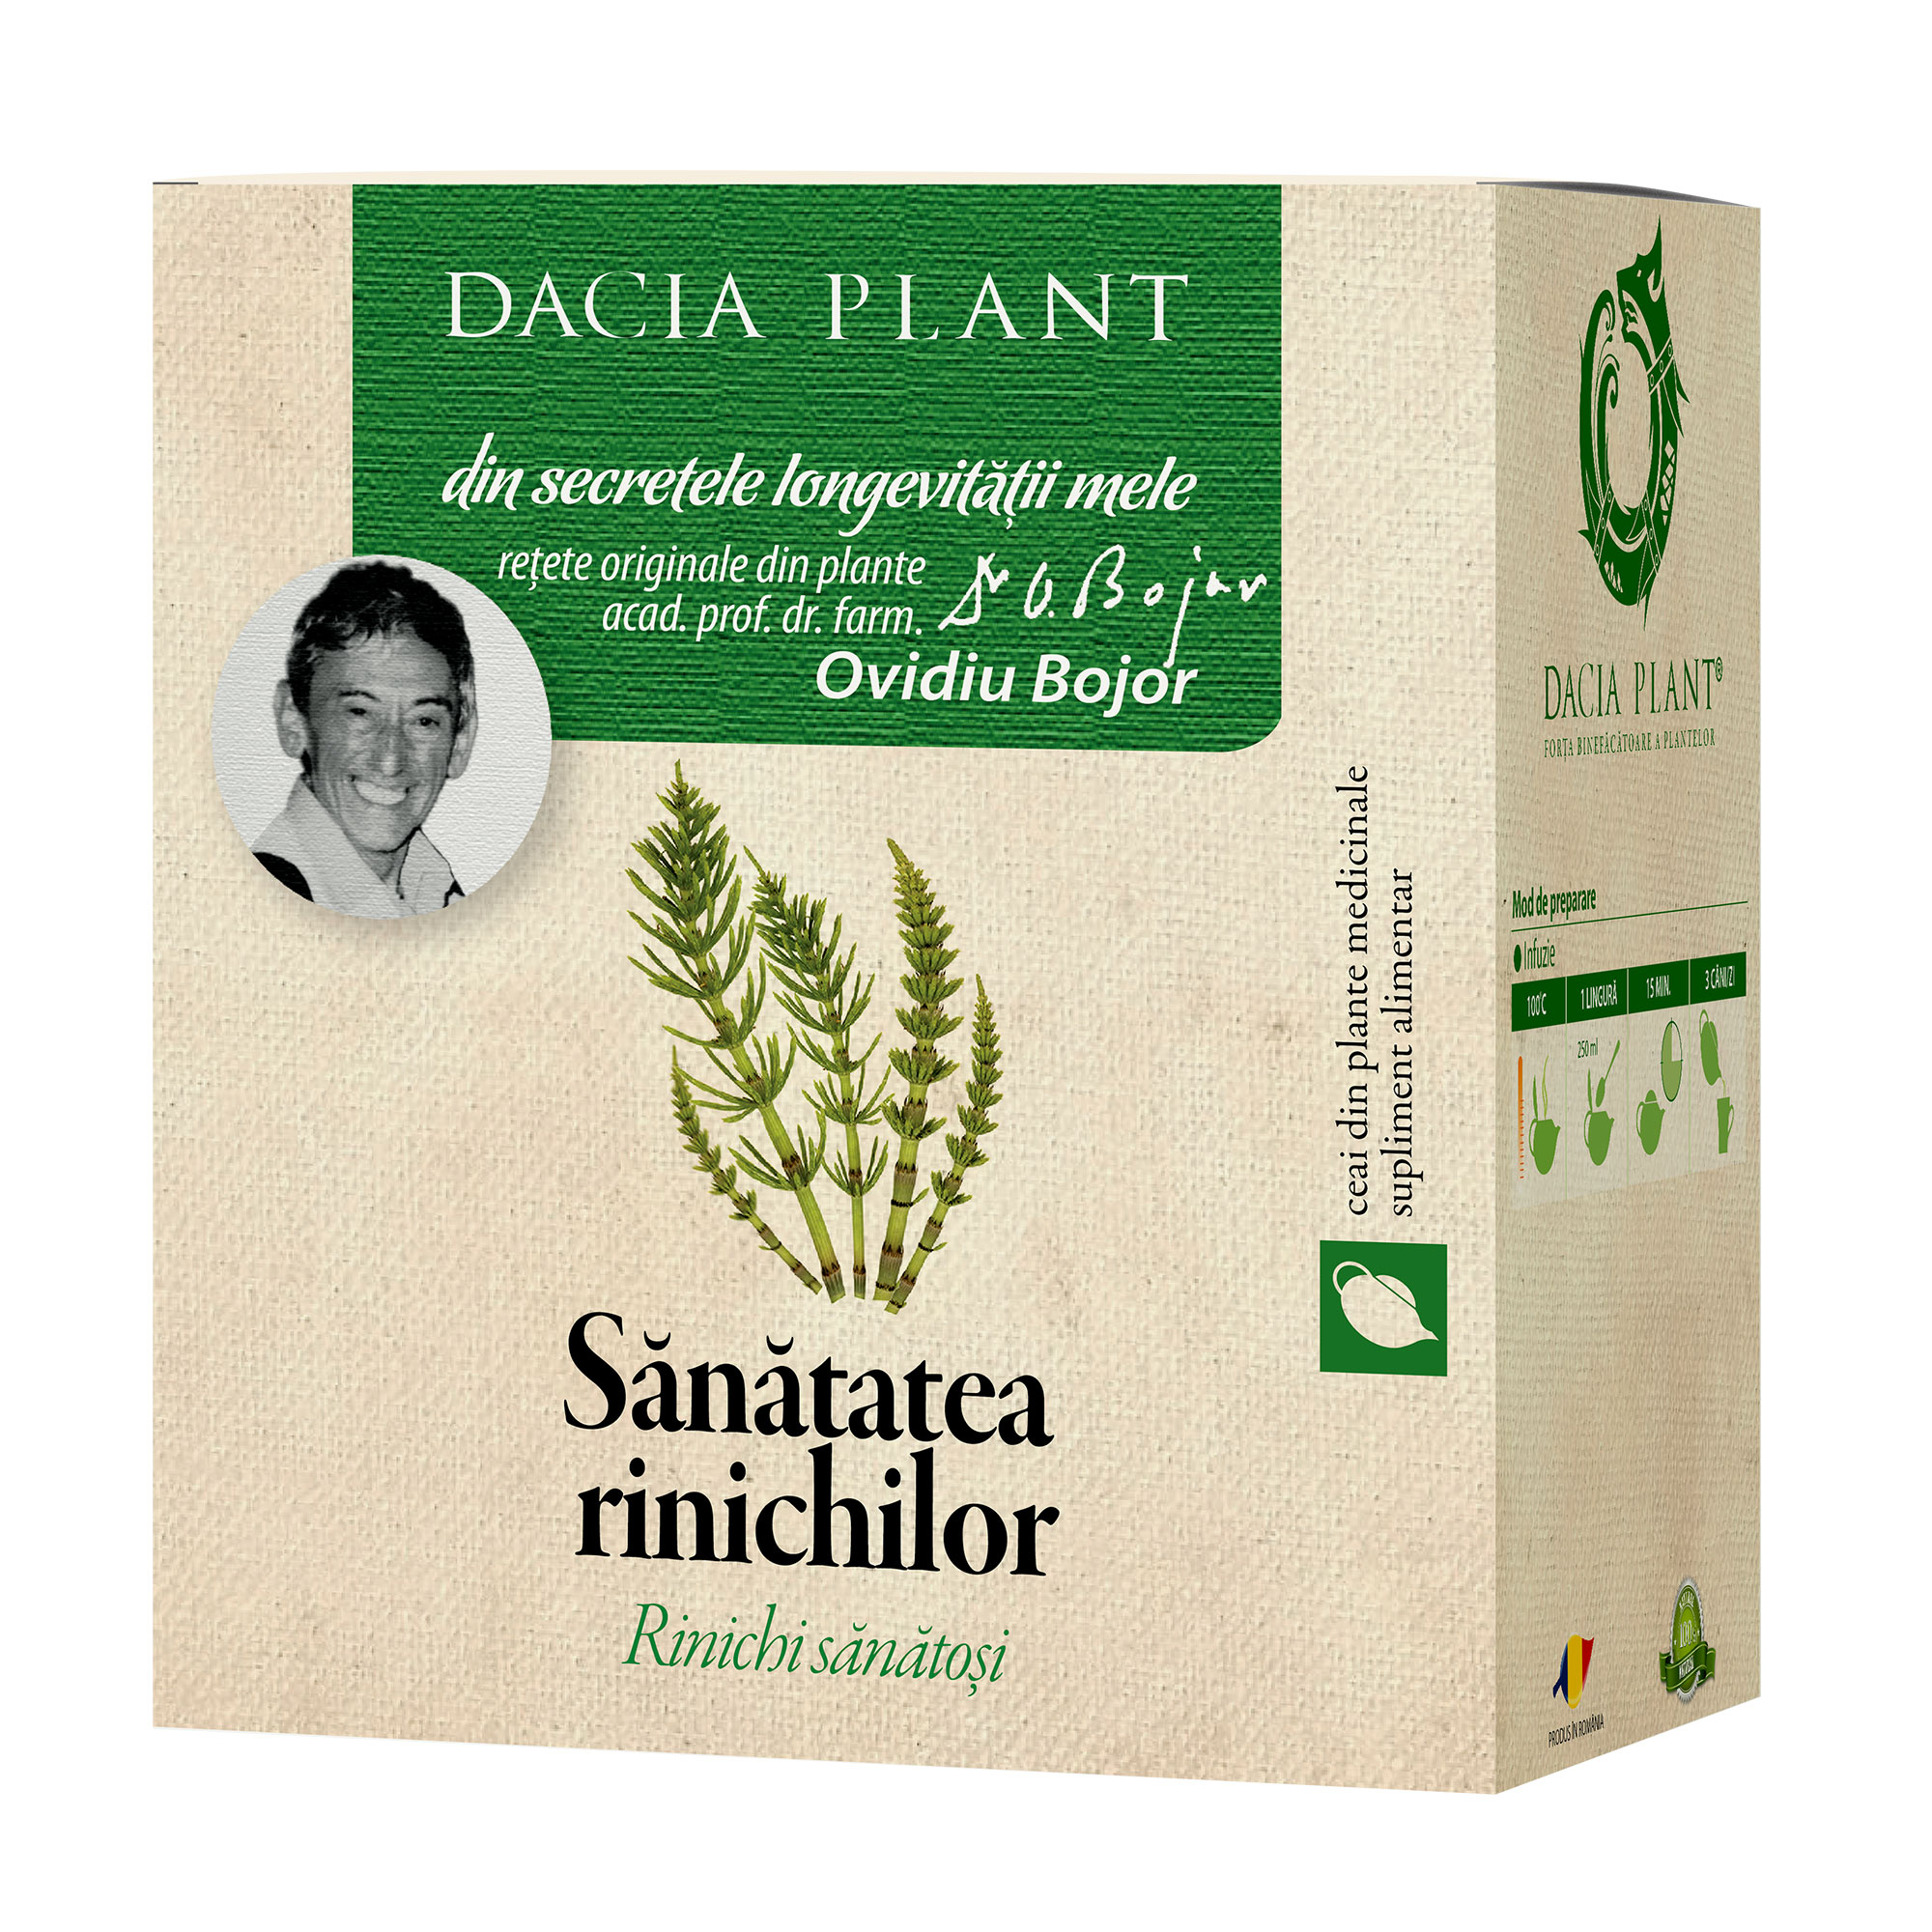 CEAIURI - Ceai din plante Sănătatea rinichilor, 50 g, Dacia Plant, sinapis.ro